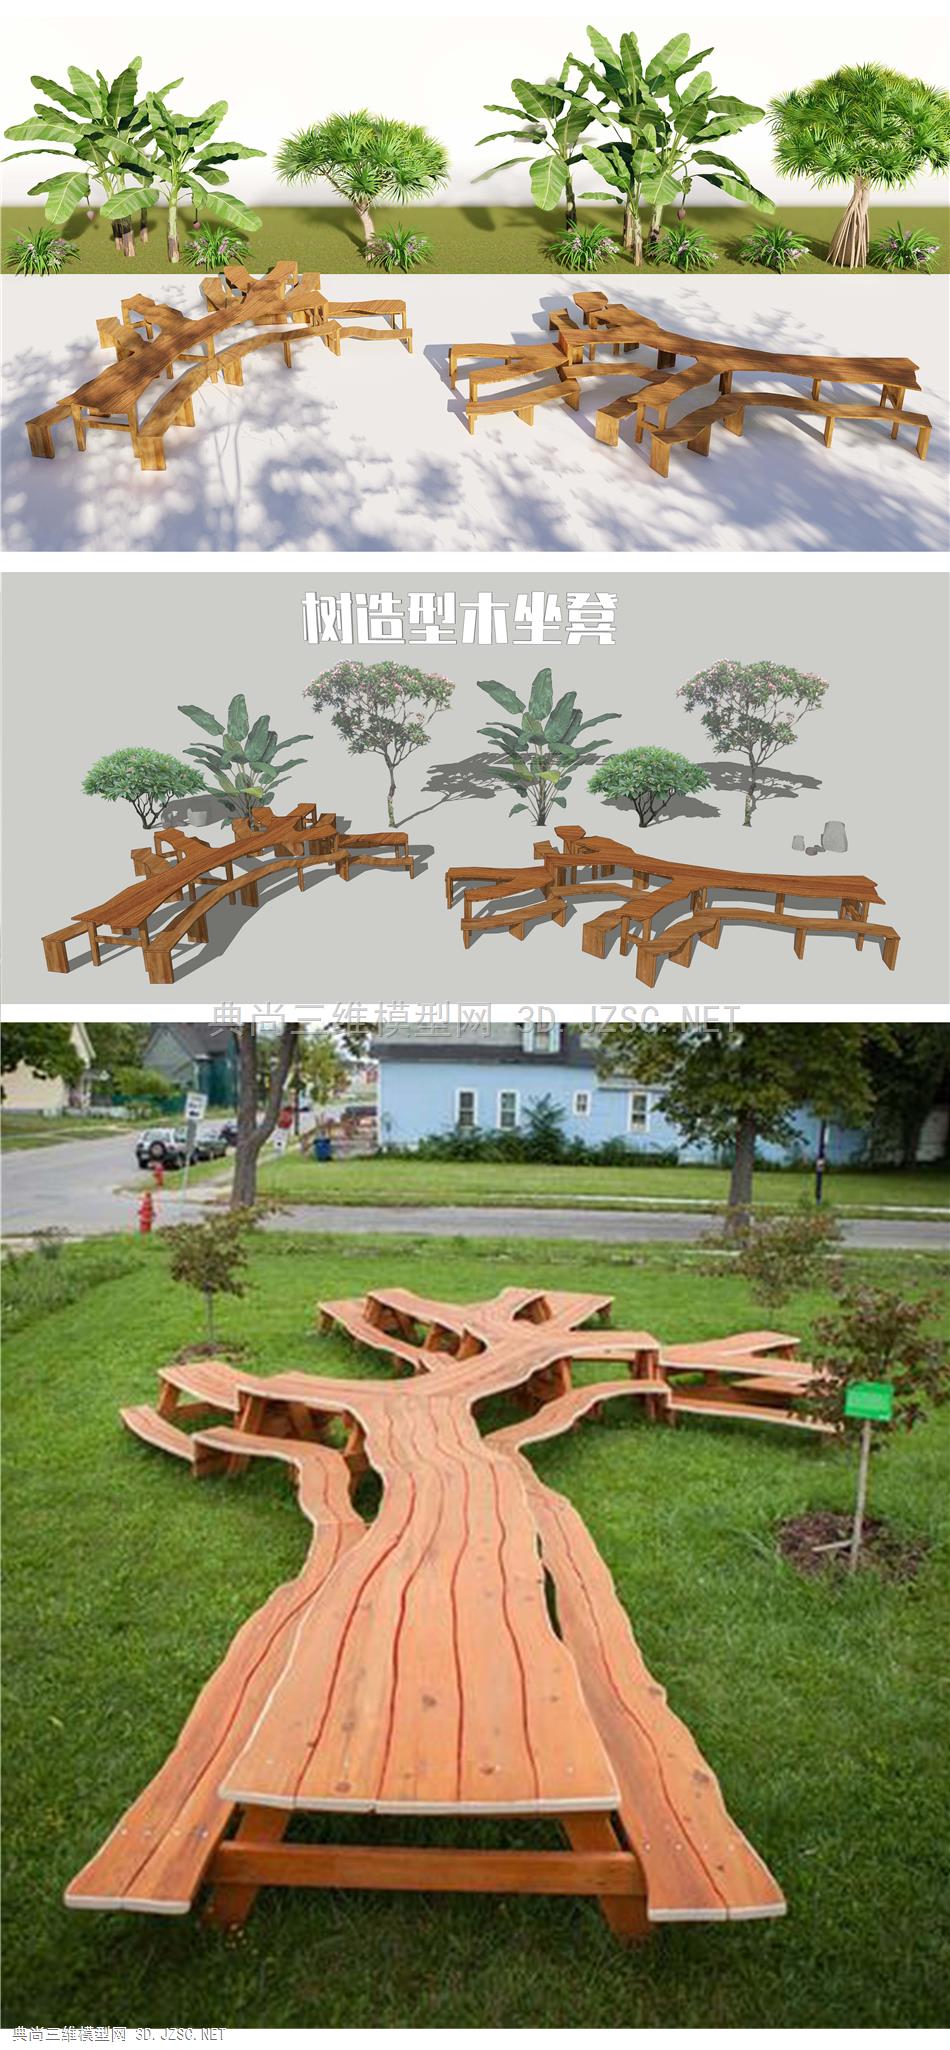 树形坐凳 树枝造型木坐凳 组合座椅户外坐凳 景观座椅 树根座椅 休闲座椅